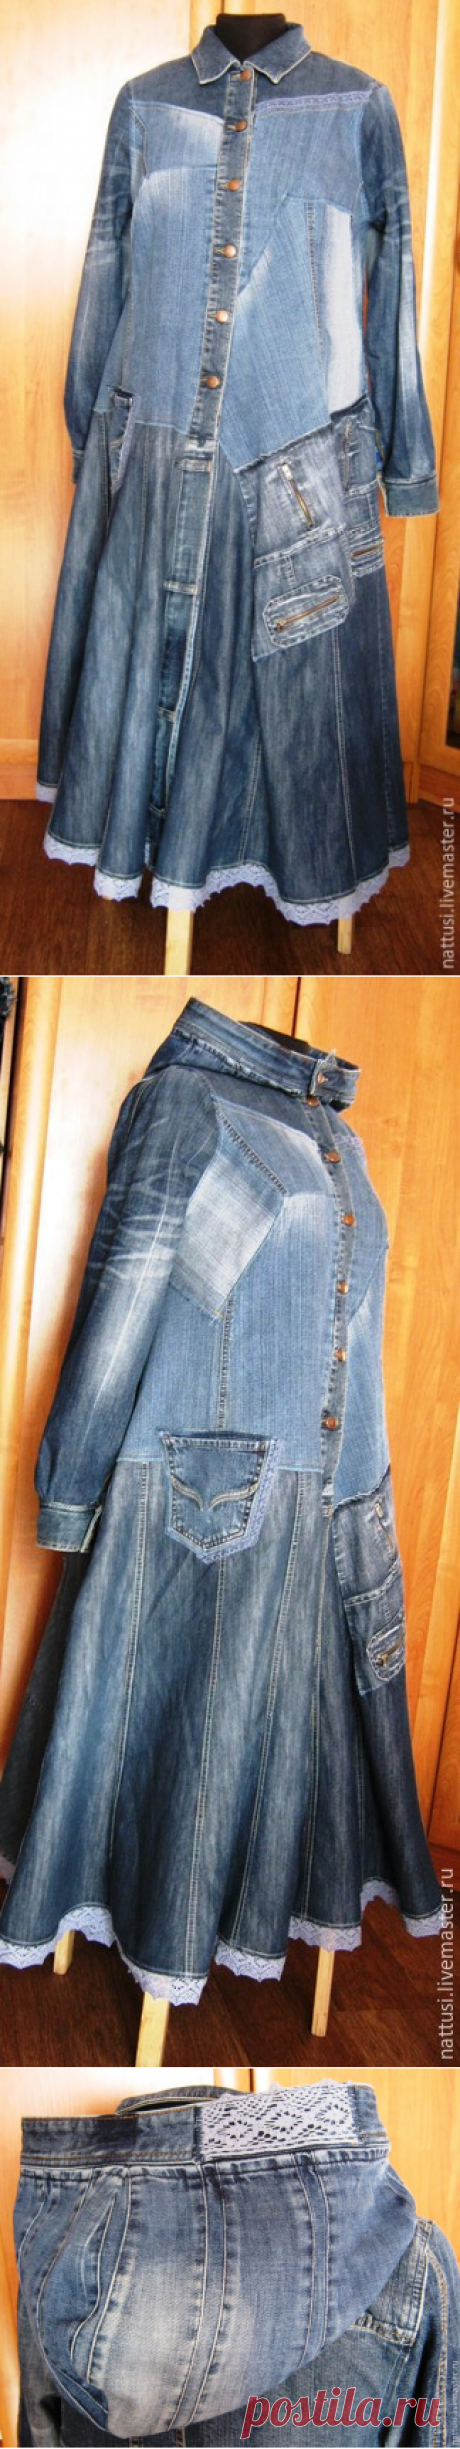 Купить Бохо-плащ джинсовый &quot;Констанция&quot; - синий, кастомайзинг, бохо-стиль, плащ, плащ женский